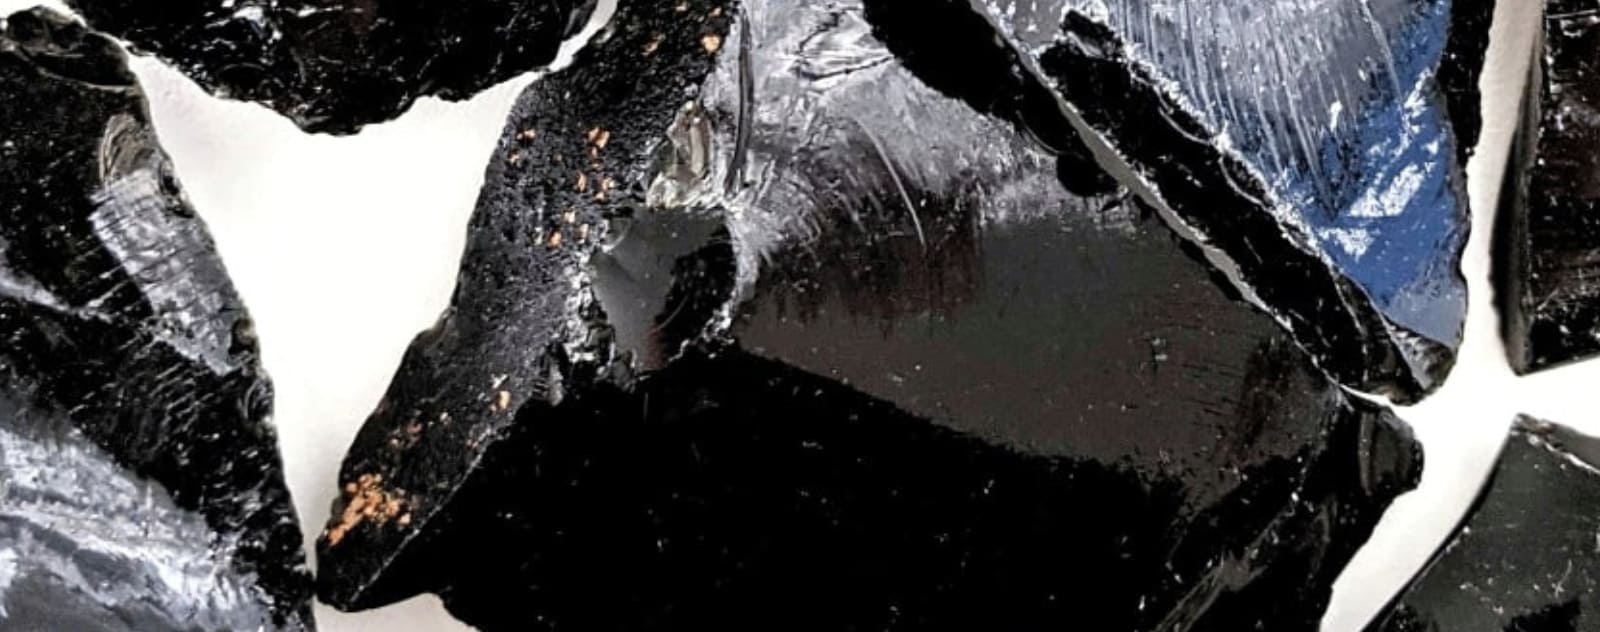 mineraux obsidienne argentée